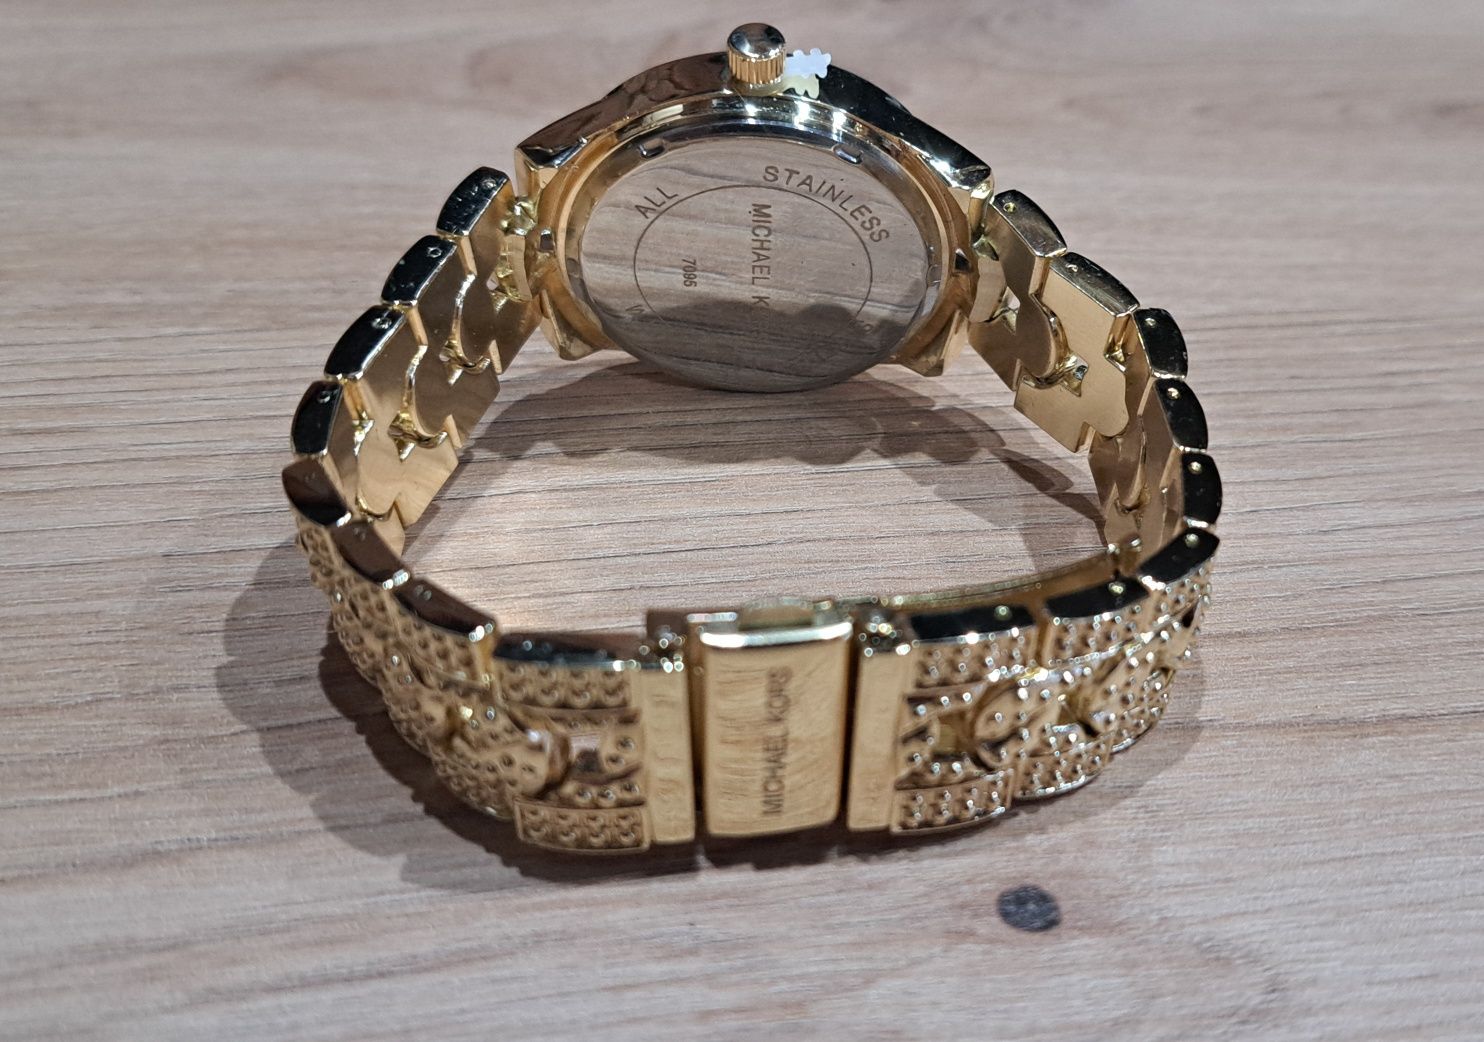 Michael Kors zegarek MK złoty cyrkonie